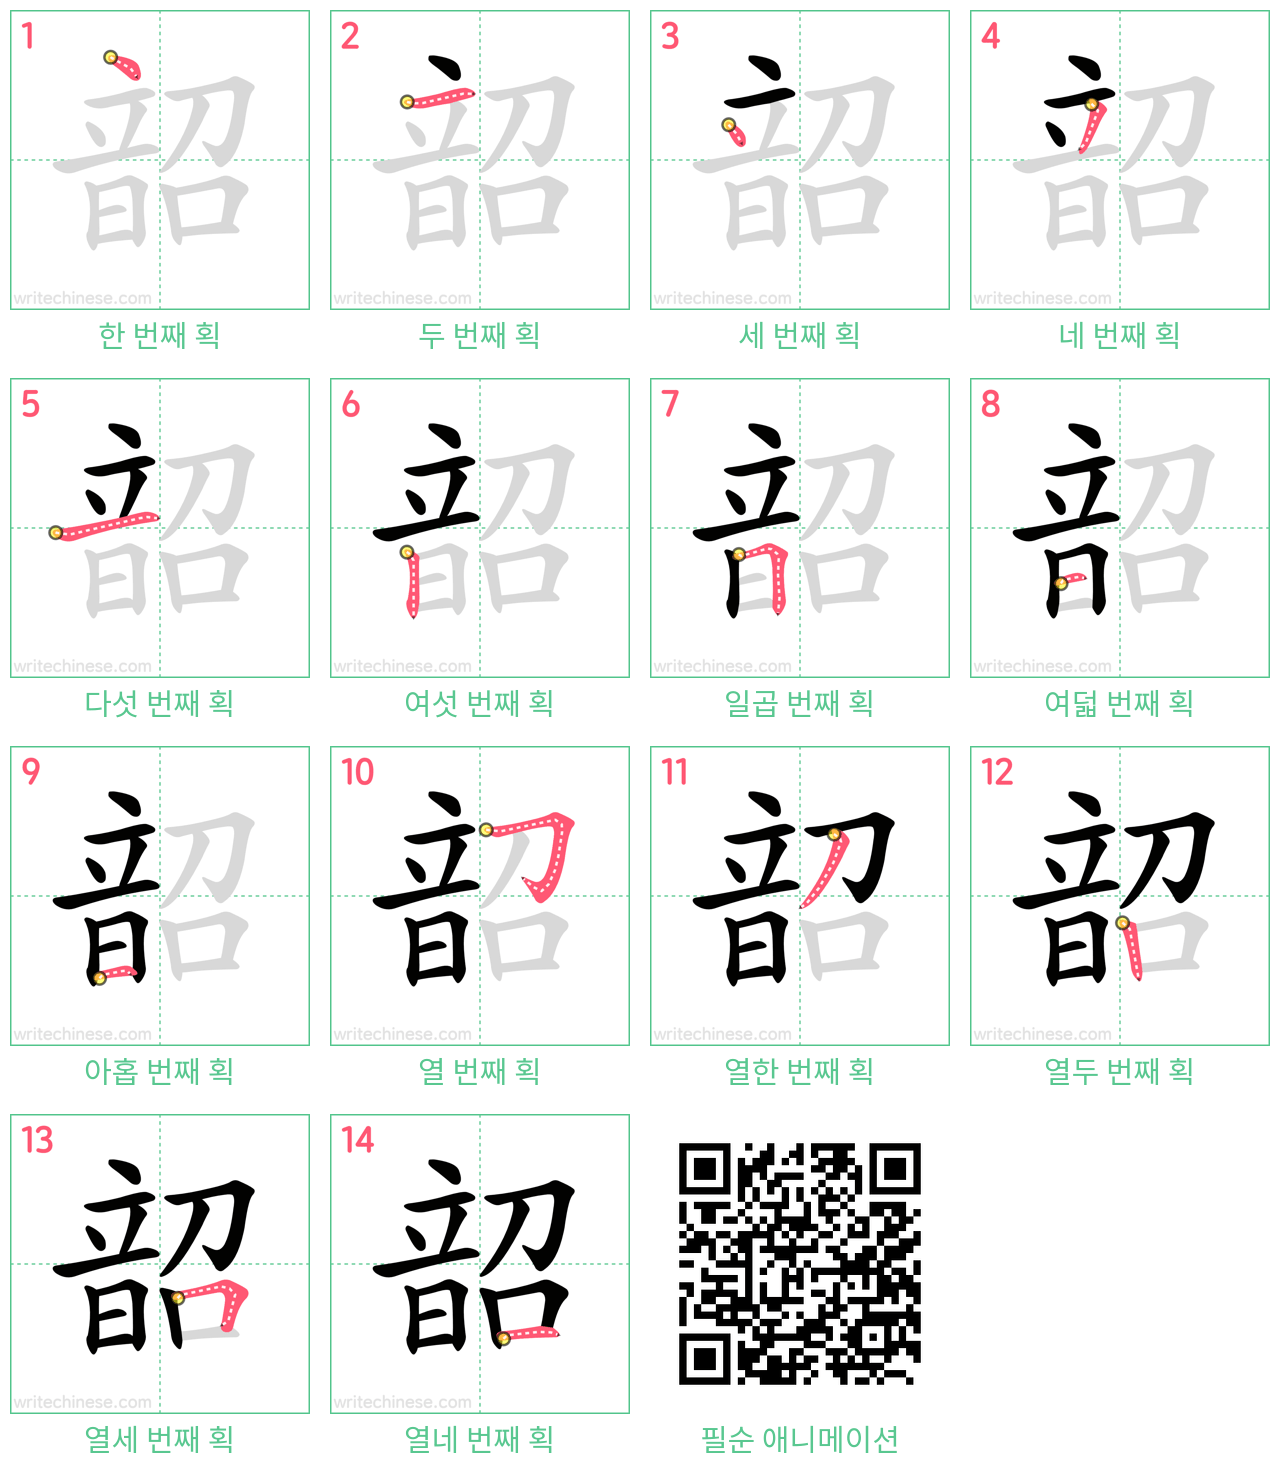 韶 step-by-step stroke order diagrams